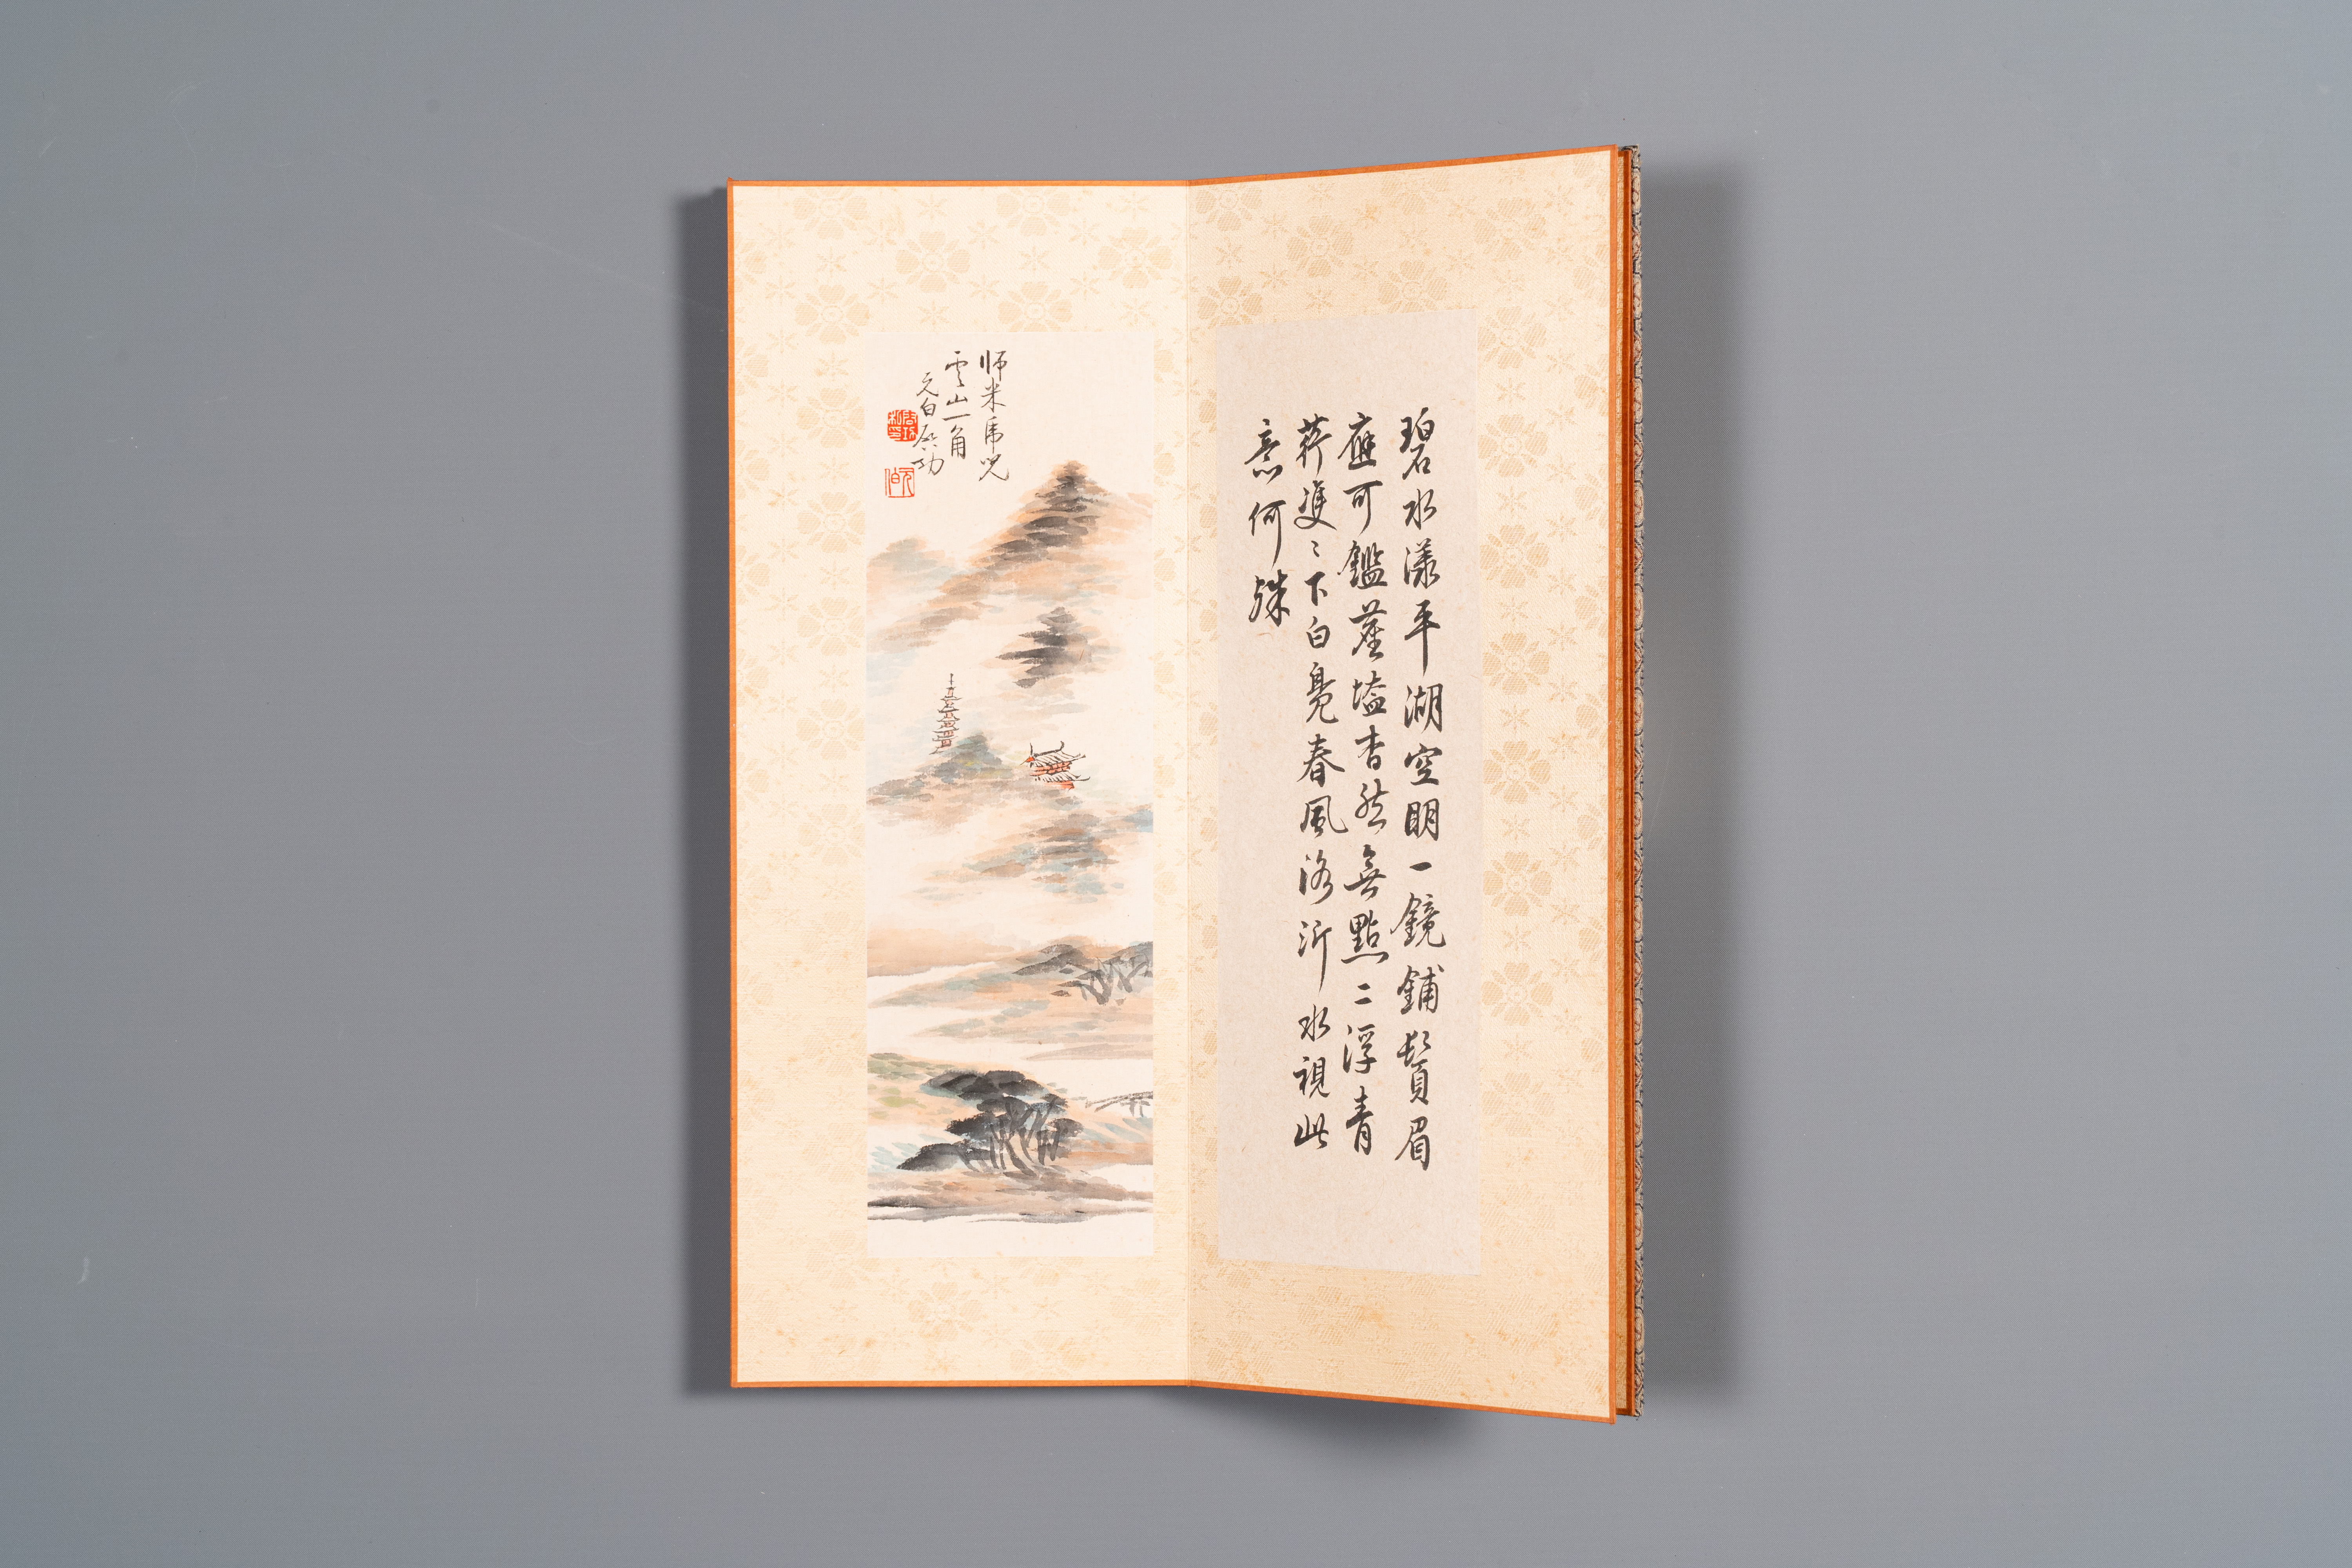 Three albums: 'Jiang Hanting æ±Ÿå¯’æ±€ (1904-1963), Lin Sanzhi æž—æ•£ä¹‹ (1898-1989) and Qi Gong å¯ - Image 18 of 23